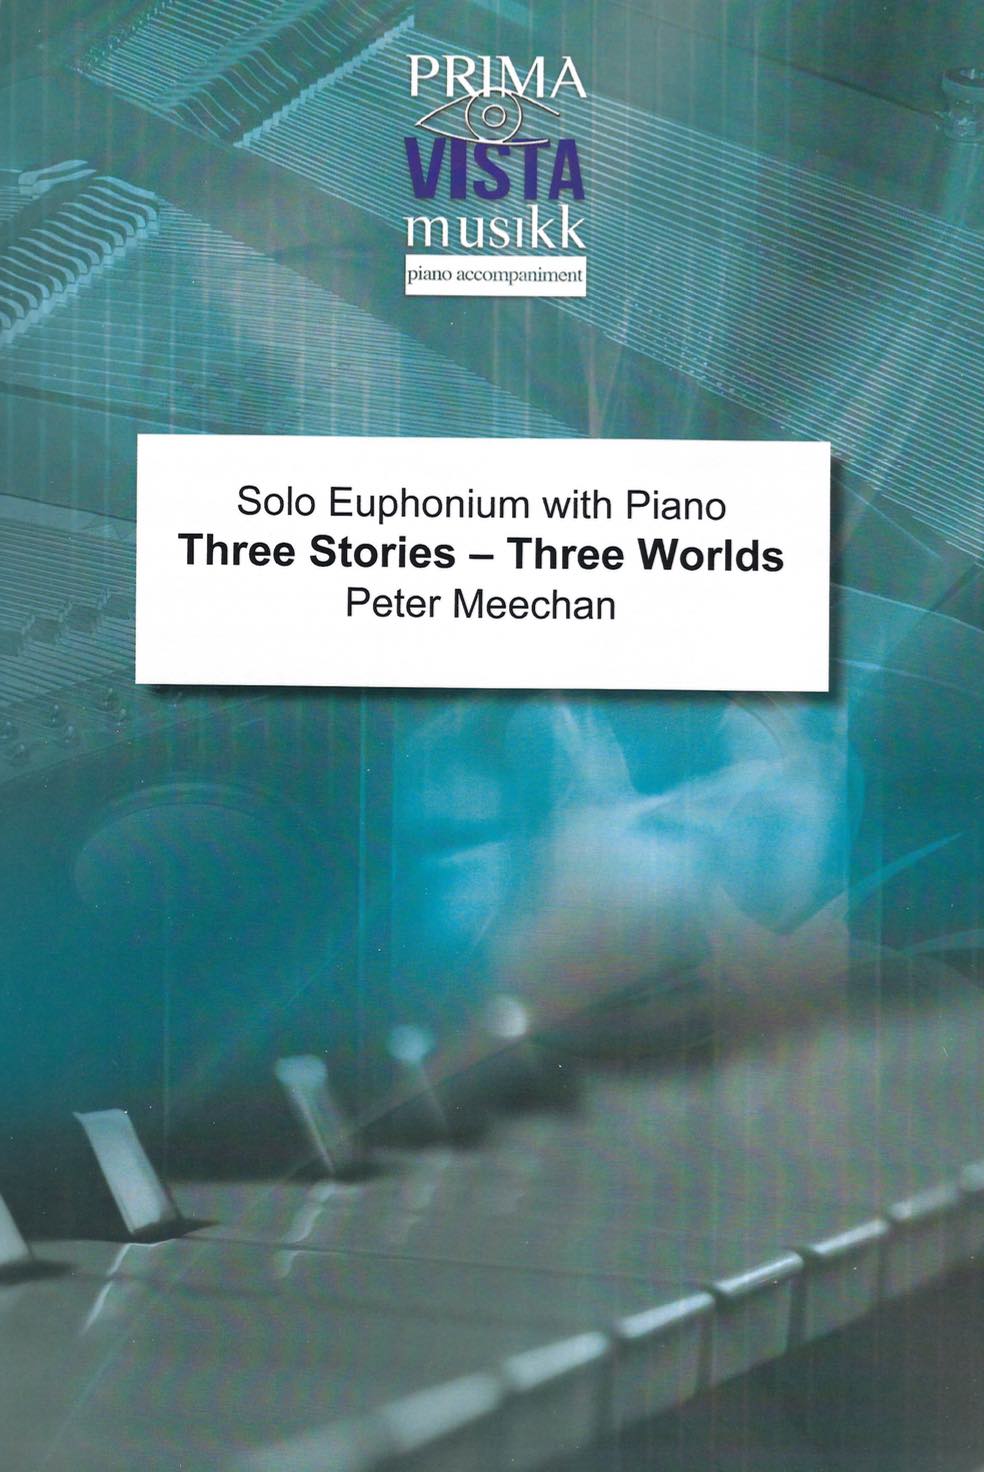 Three Stories - Three Worlds (Concerto for Euphonium) - Peter Meechan - Euphonium and Piano